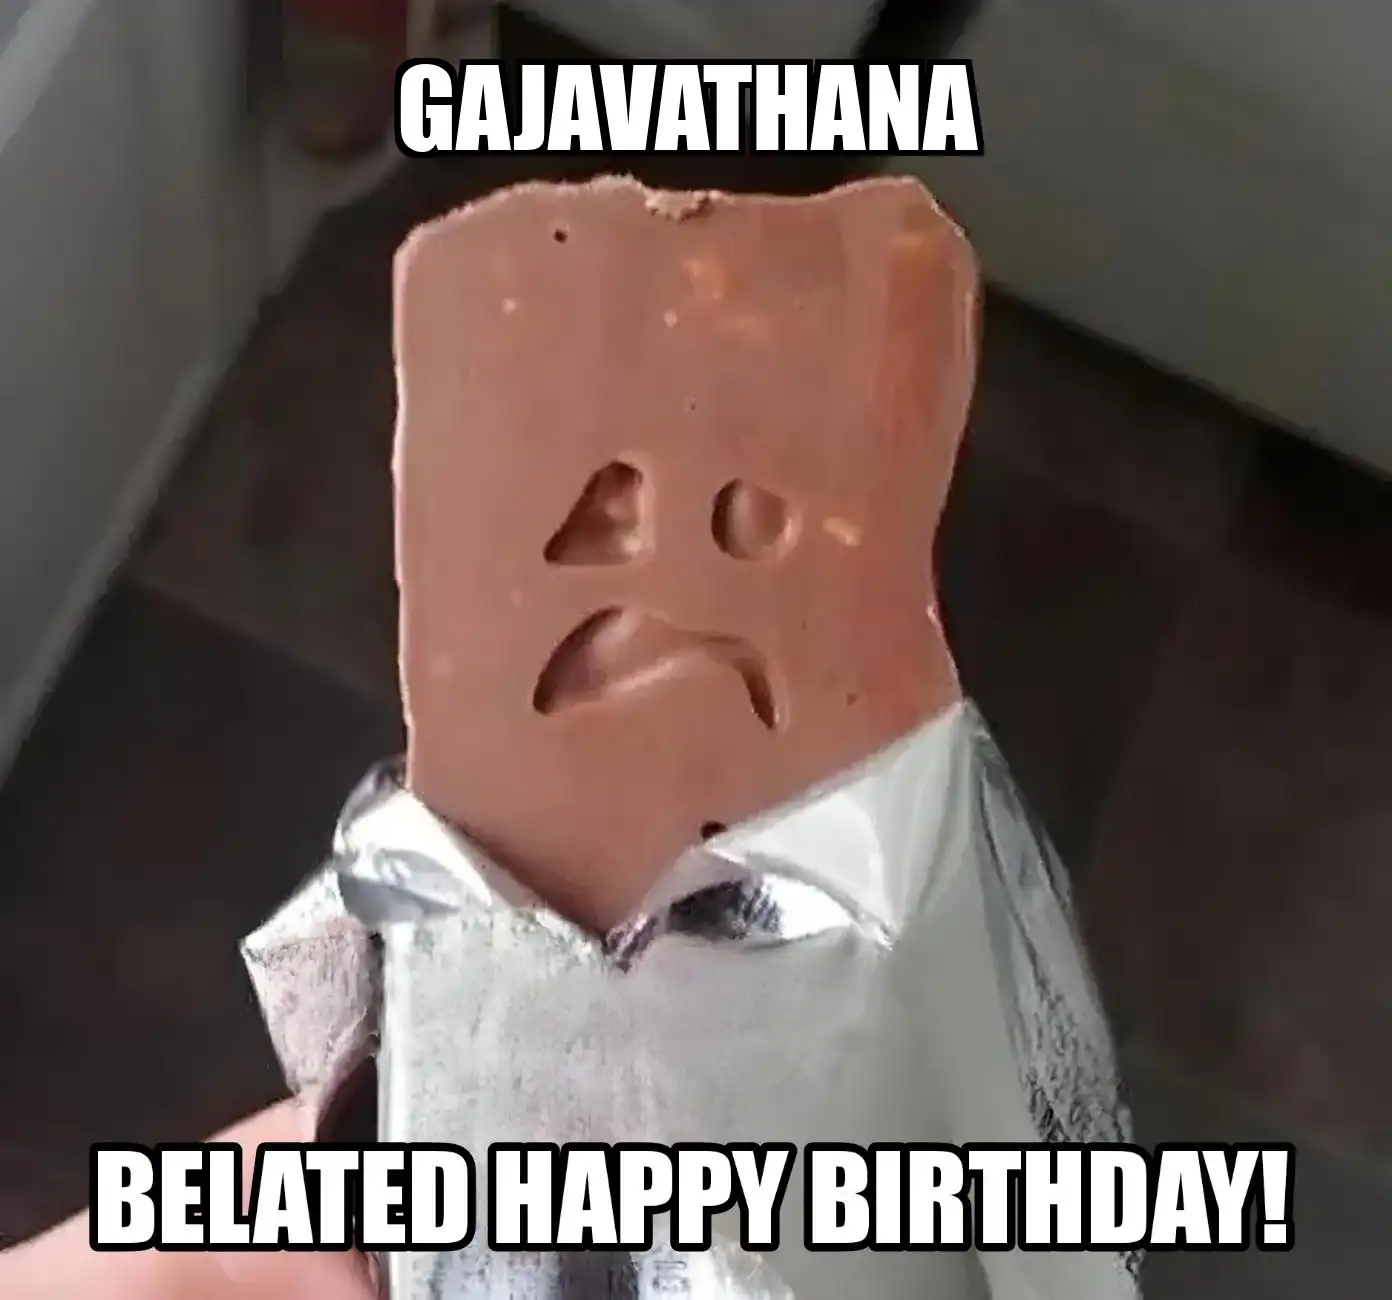 Happy Birthday Gajavathana Belated Happy Birthday Meme